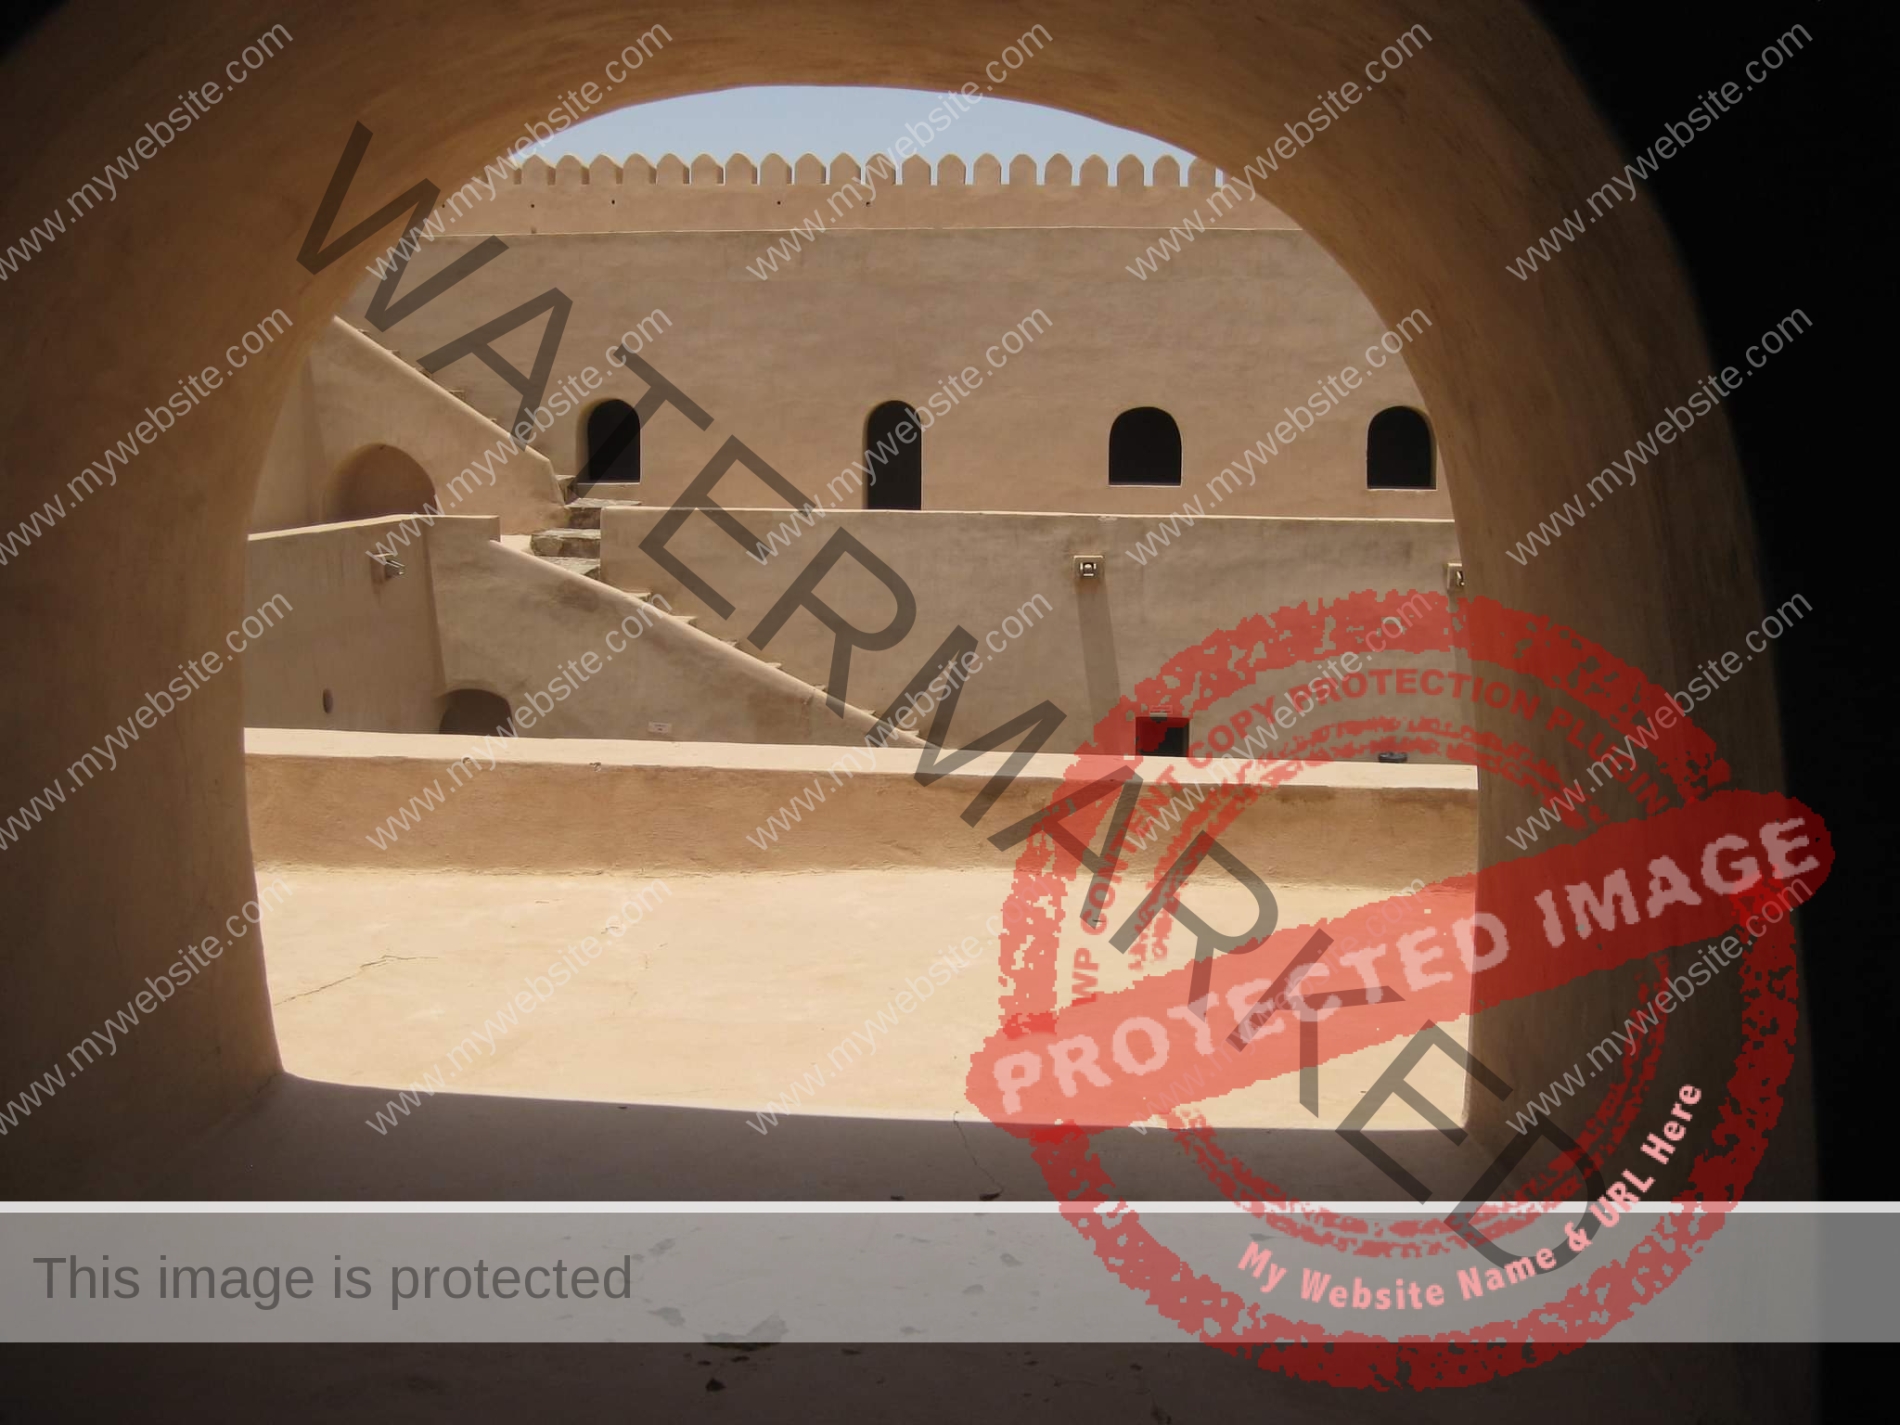 العارف بالله طلعت: جولة صحفية داخل "حصن المنترب" بسلطنة عمان " بالصور"